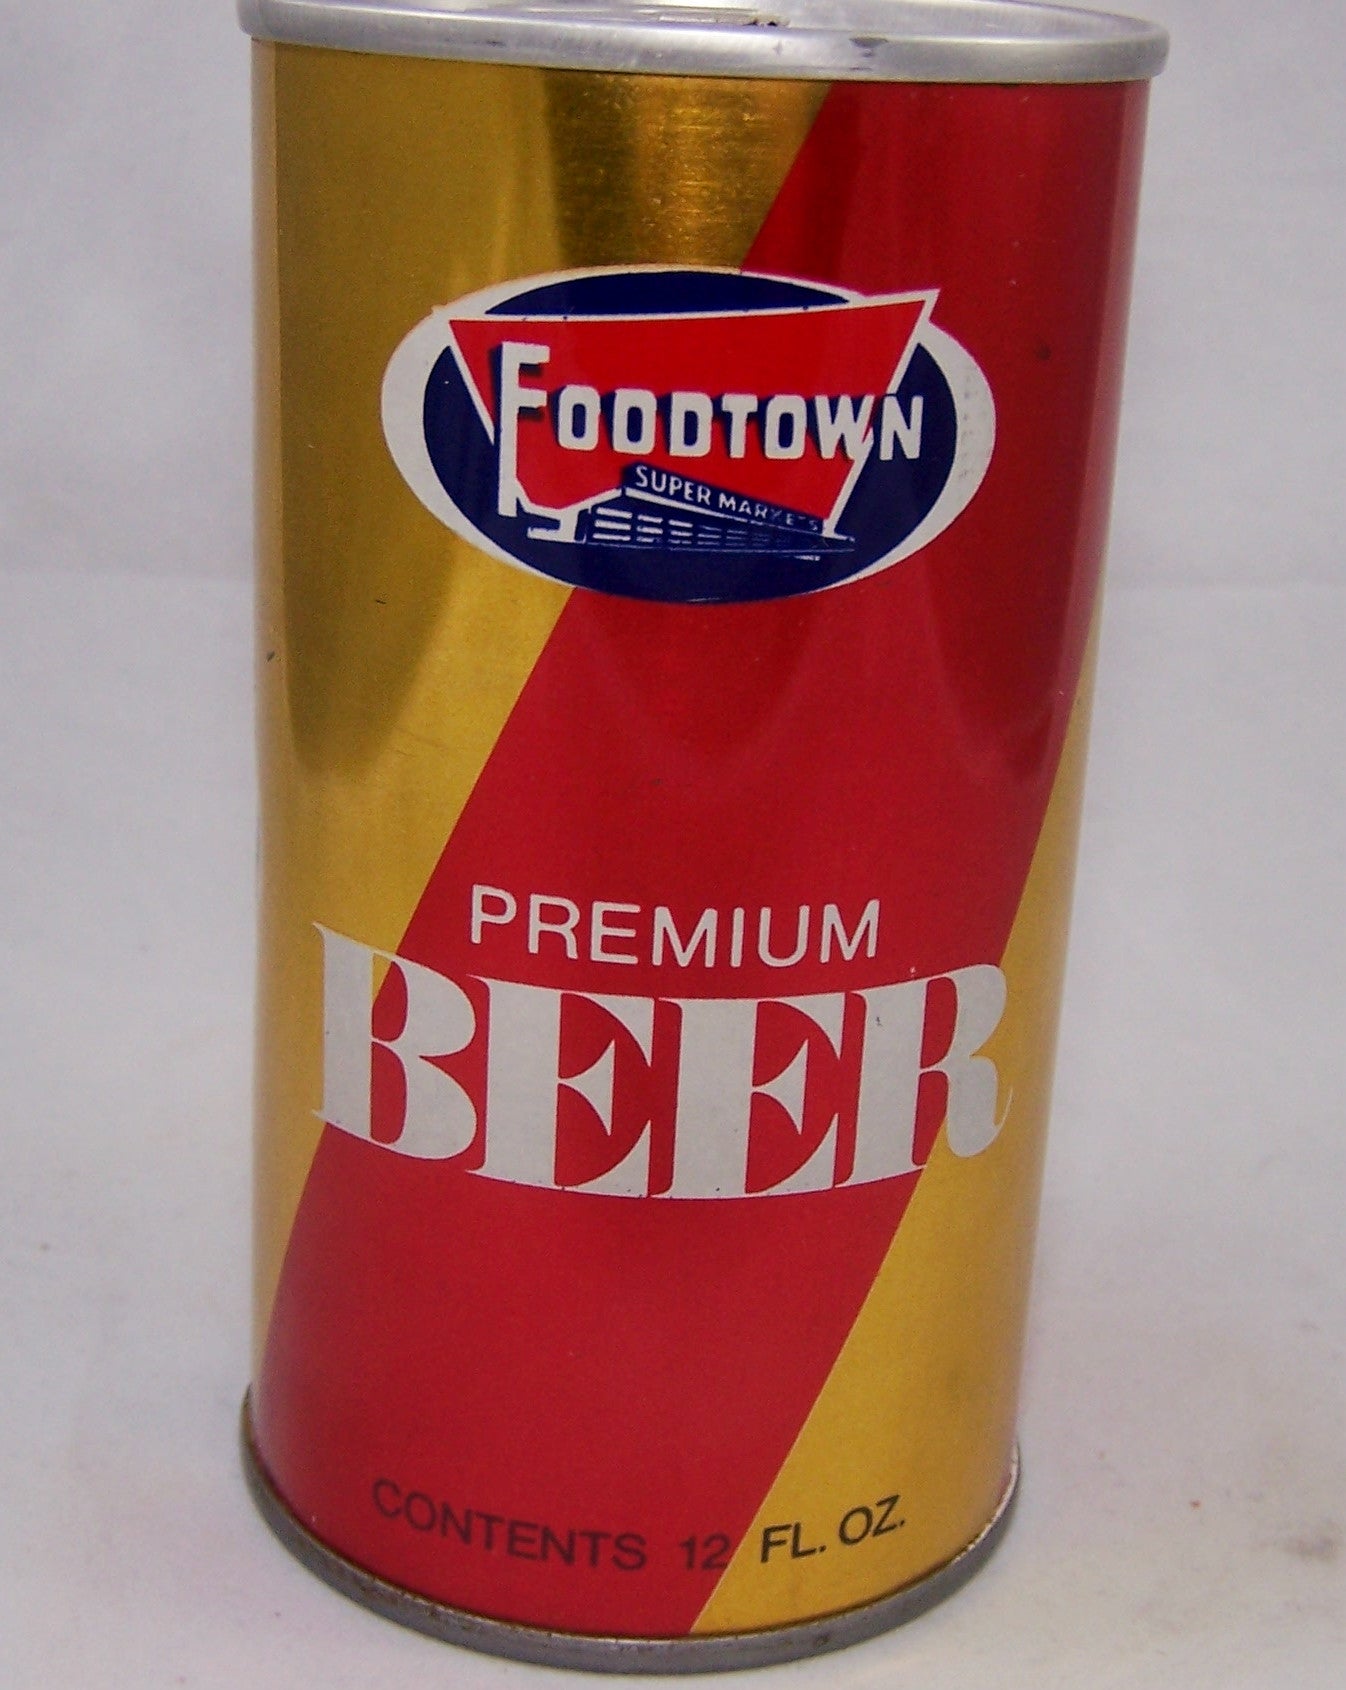 Foodtown Premium Beer, USBC II 65-30, Grade 1/1 + Sold on 10/07/16